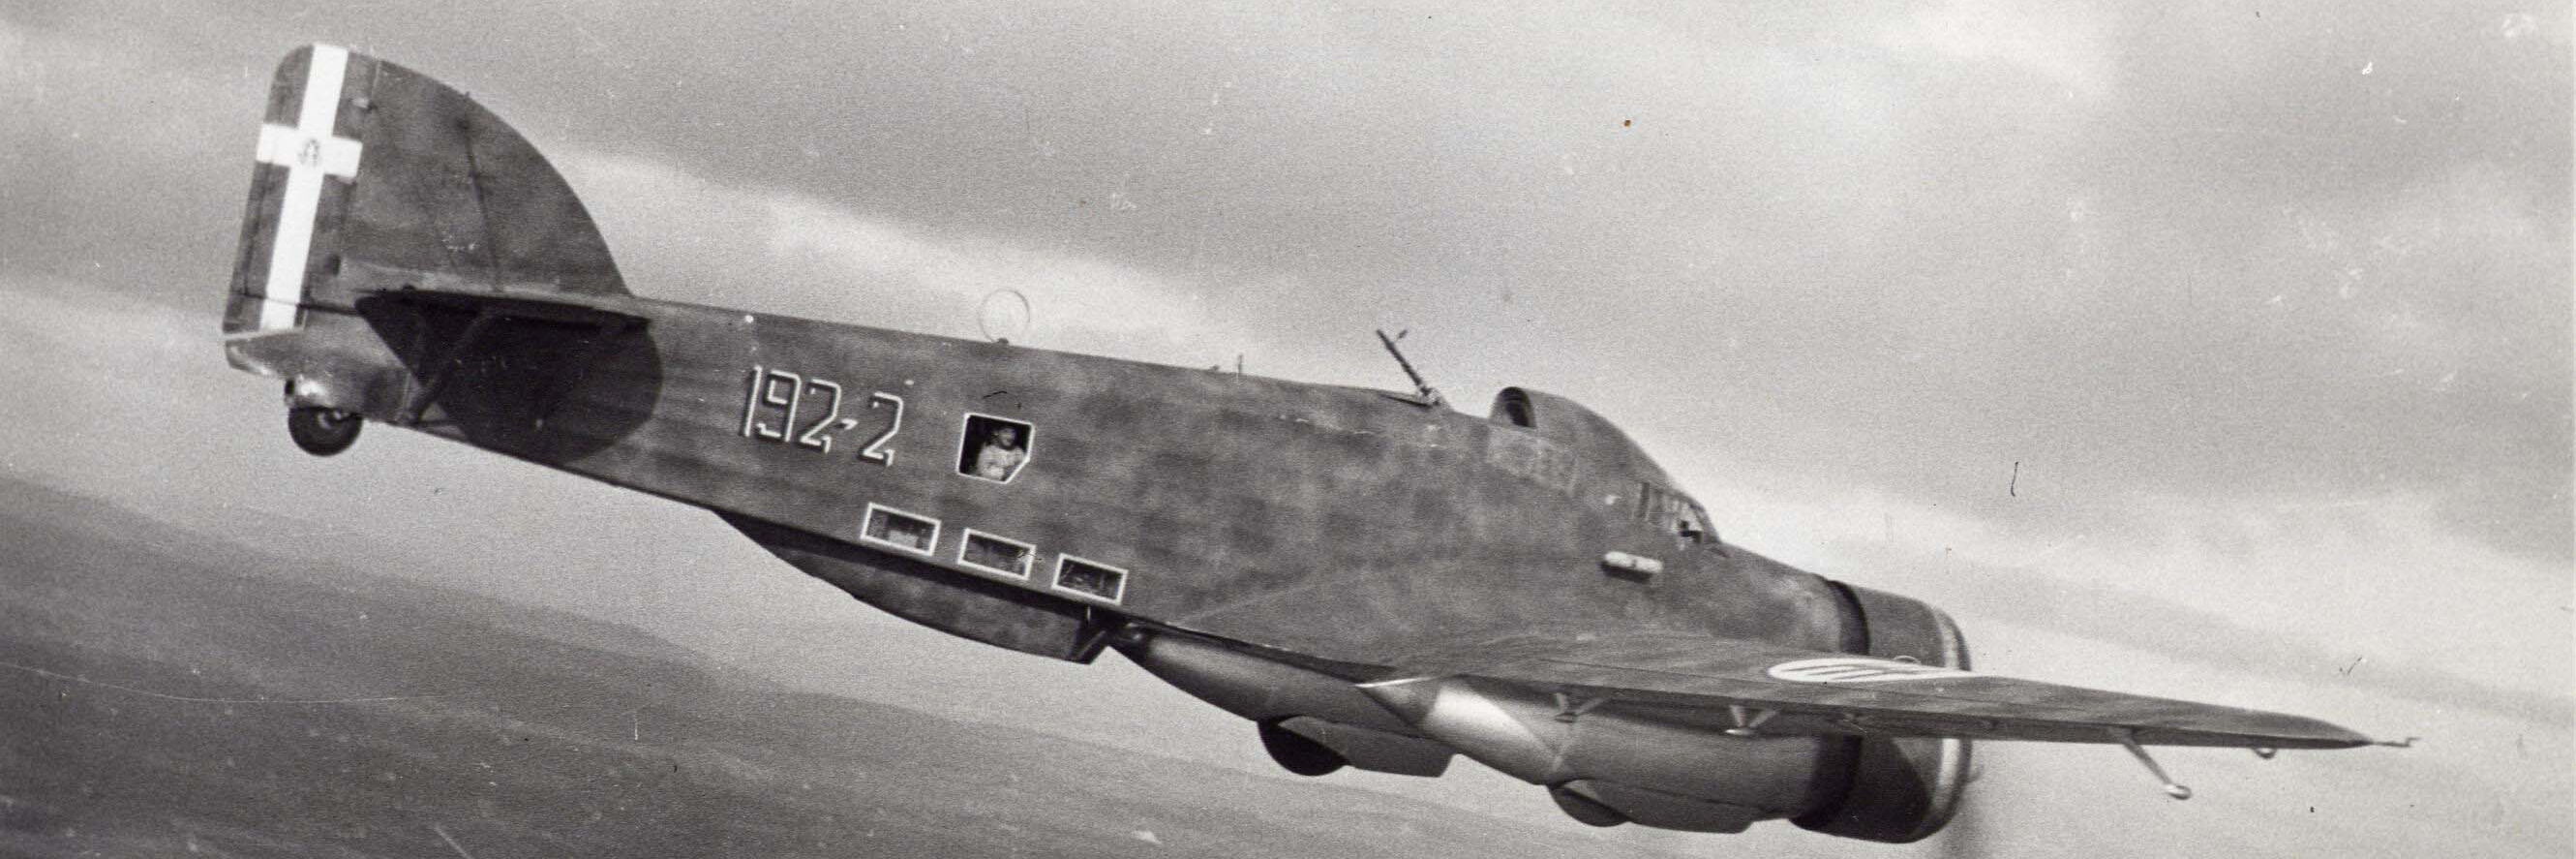 Italienischer Bomber während des 2. Weltkrieges